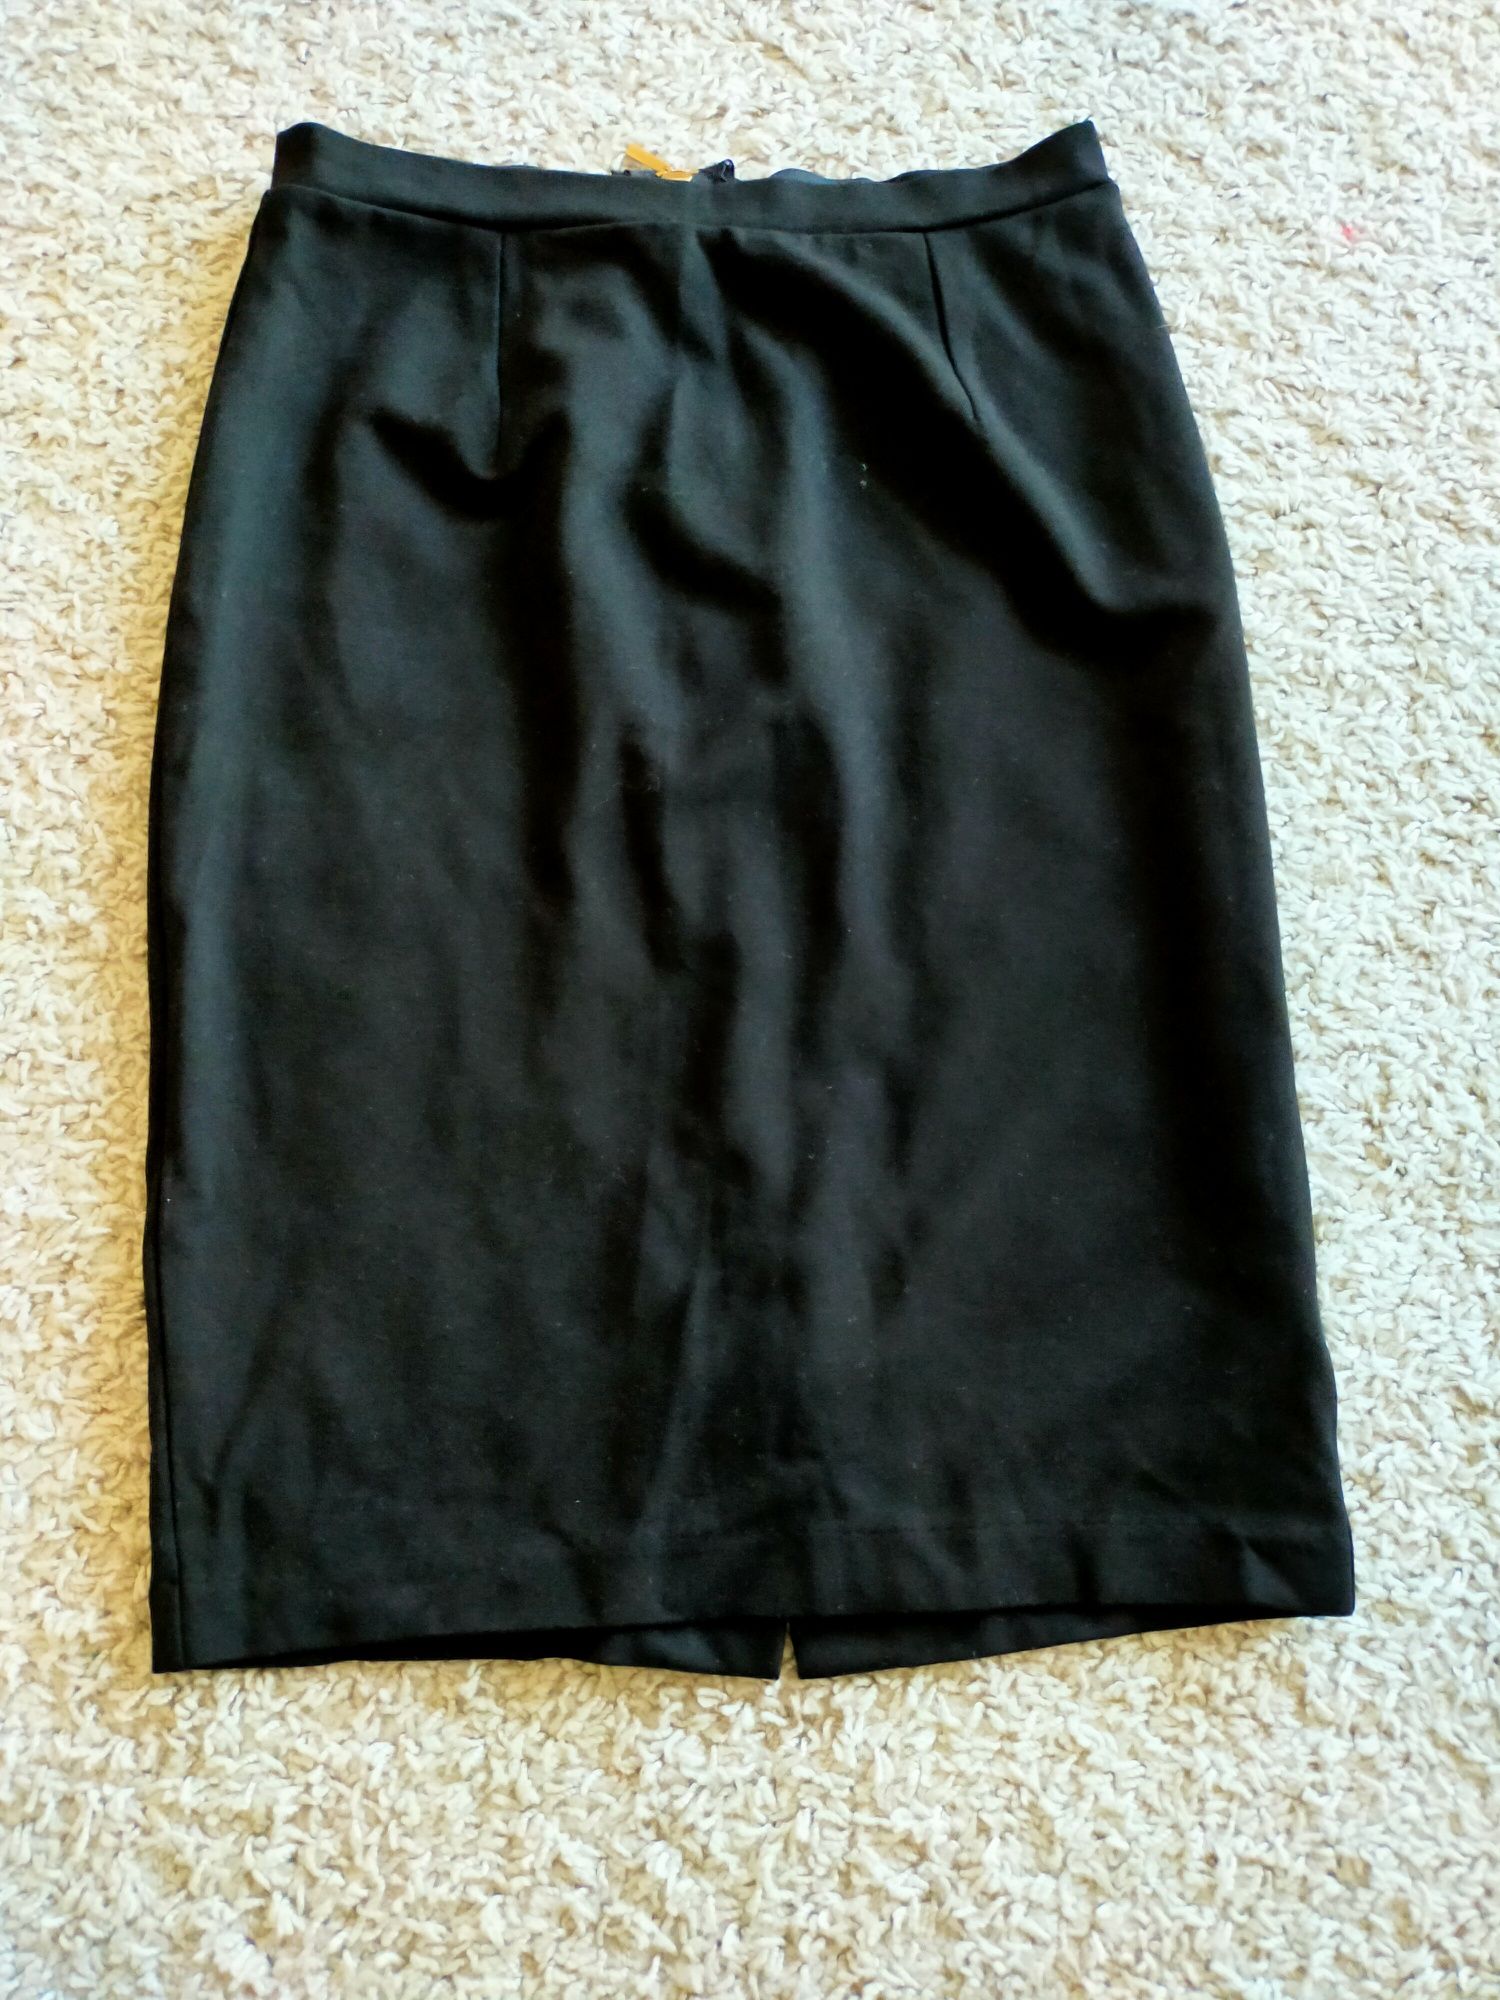 Spódnica klasyczna czarna dopasowana suwak złoty Mohito